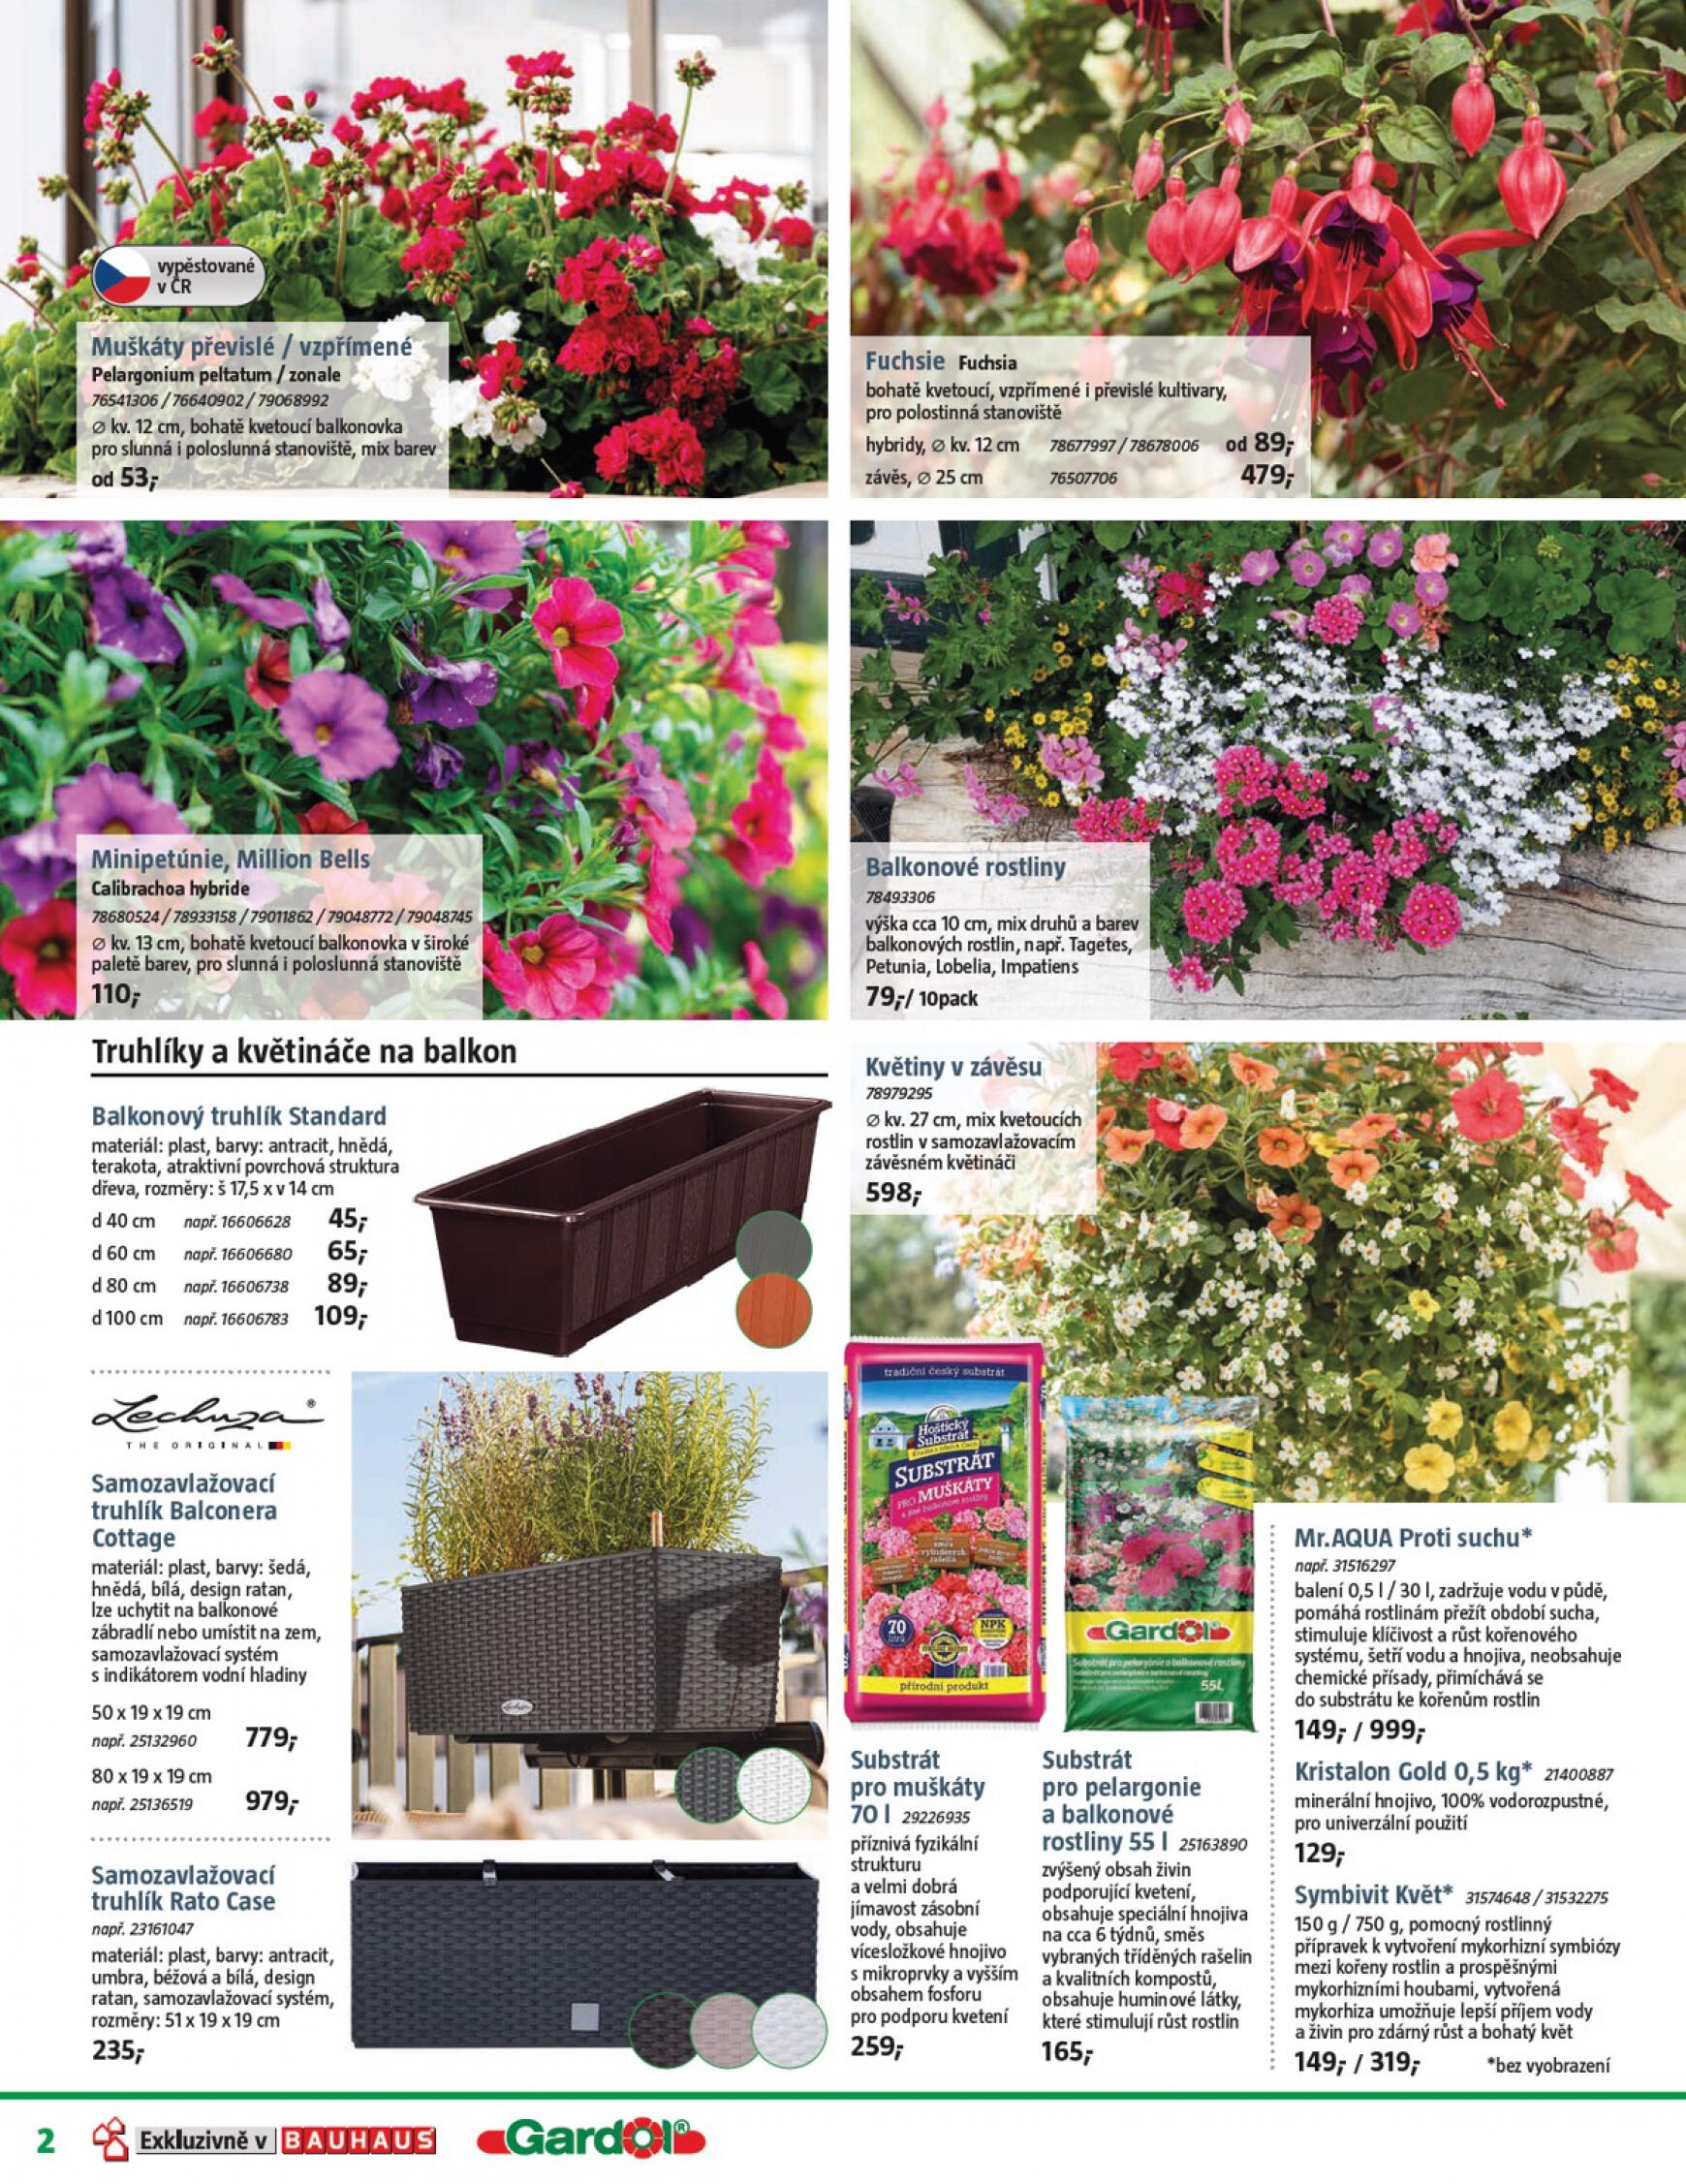 bauhaus - Leták BAUHAUS - Katalog Zahradní centrum 2 aktuální 12.04. - 09.05. - page: 2